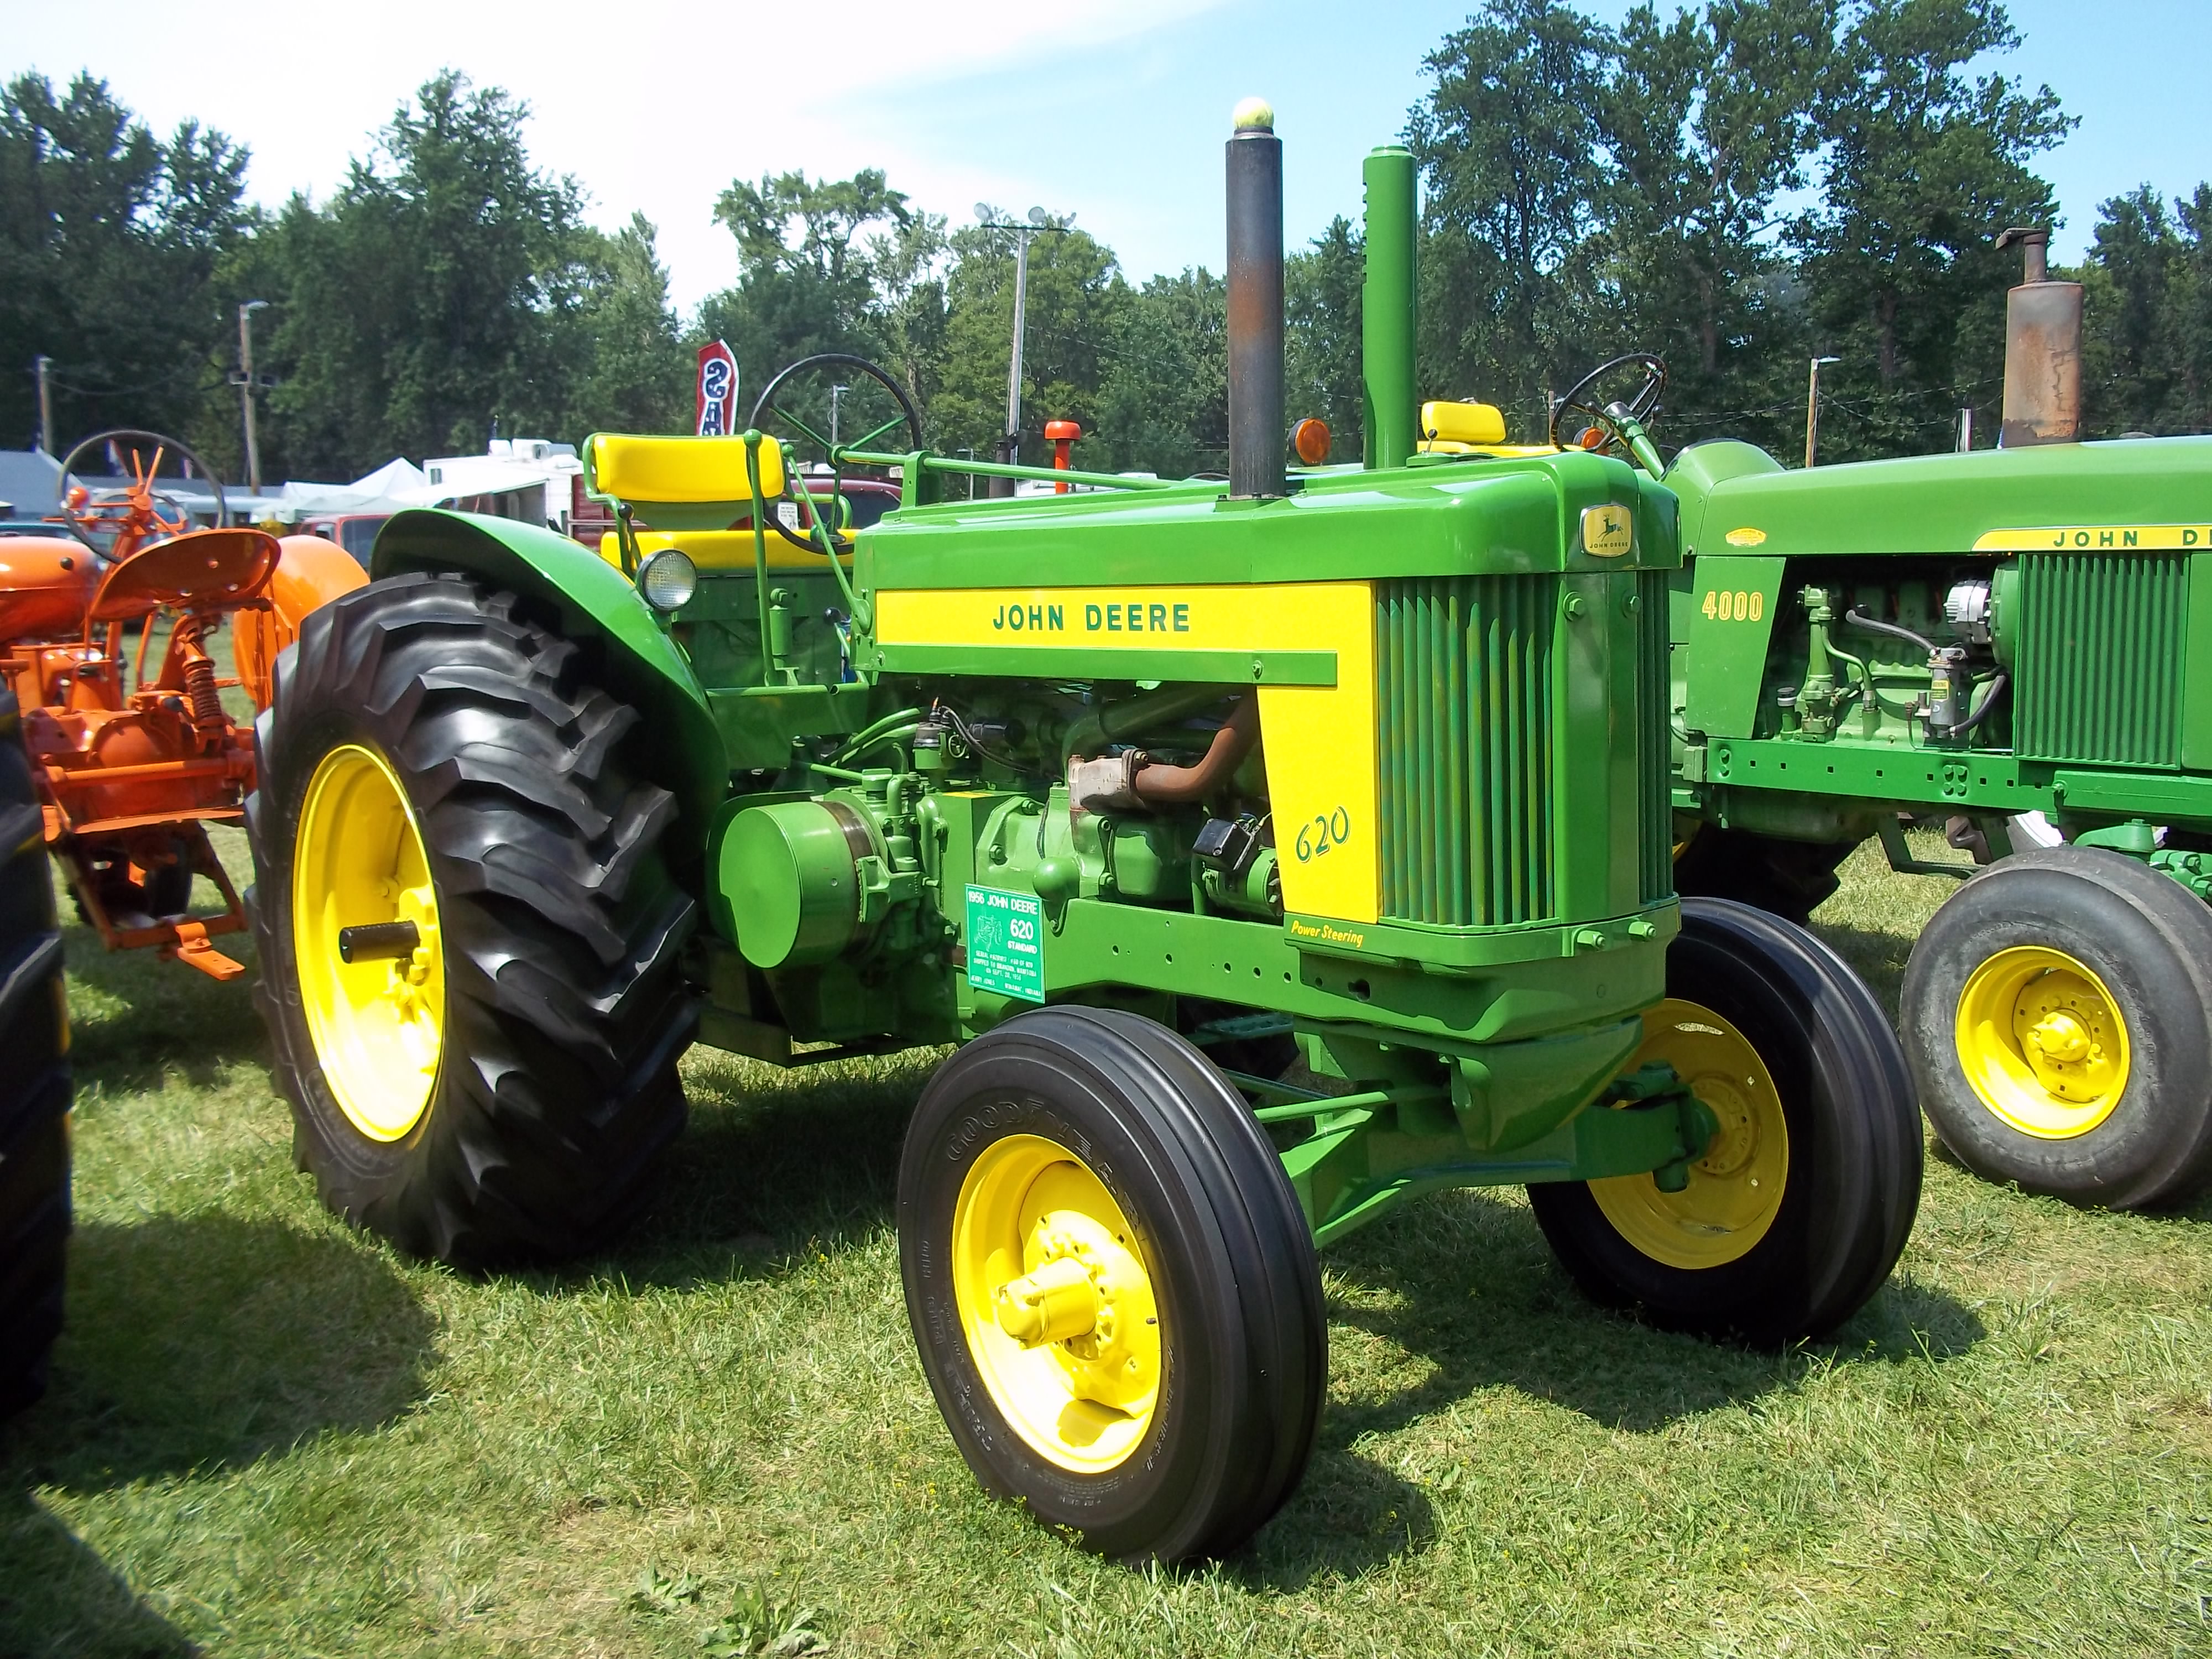 620 Standard tractor | Antique John Deere Tractors | Pinterest